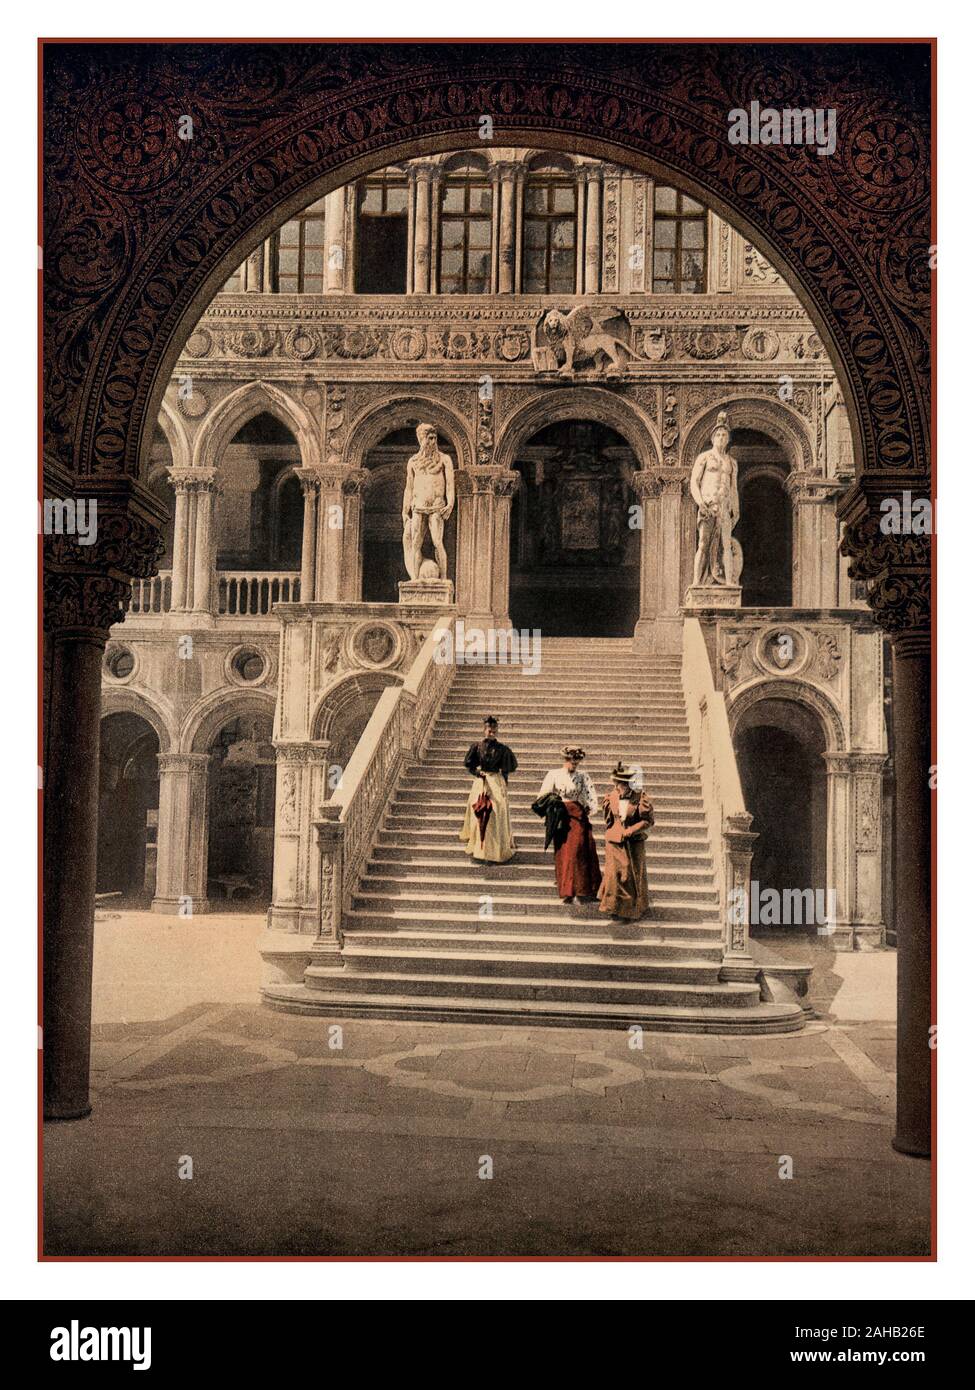 Palais des Doges de Venise historique ancien Vintage Photochrom bien habillé avec mesdames dans un palais vénitien. L'escalier de la Chaussée des Géants, La Scala del Palazzo Del Dogi Palais des Doges de Venise, Italie 1890 Banque D'Images